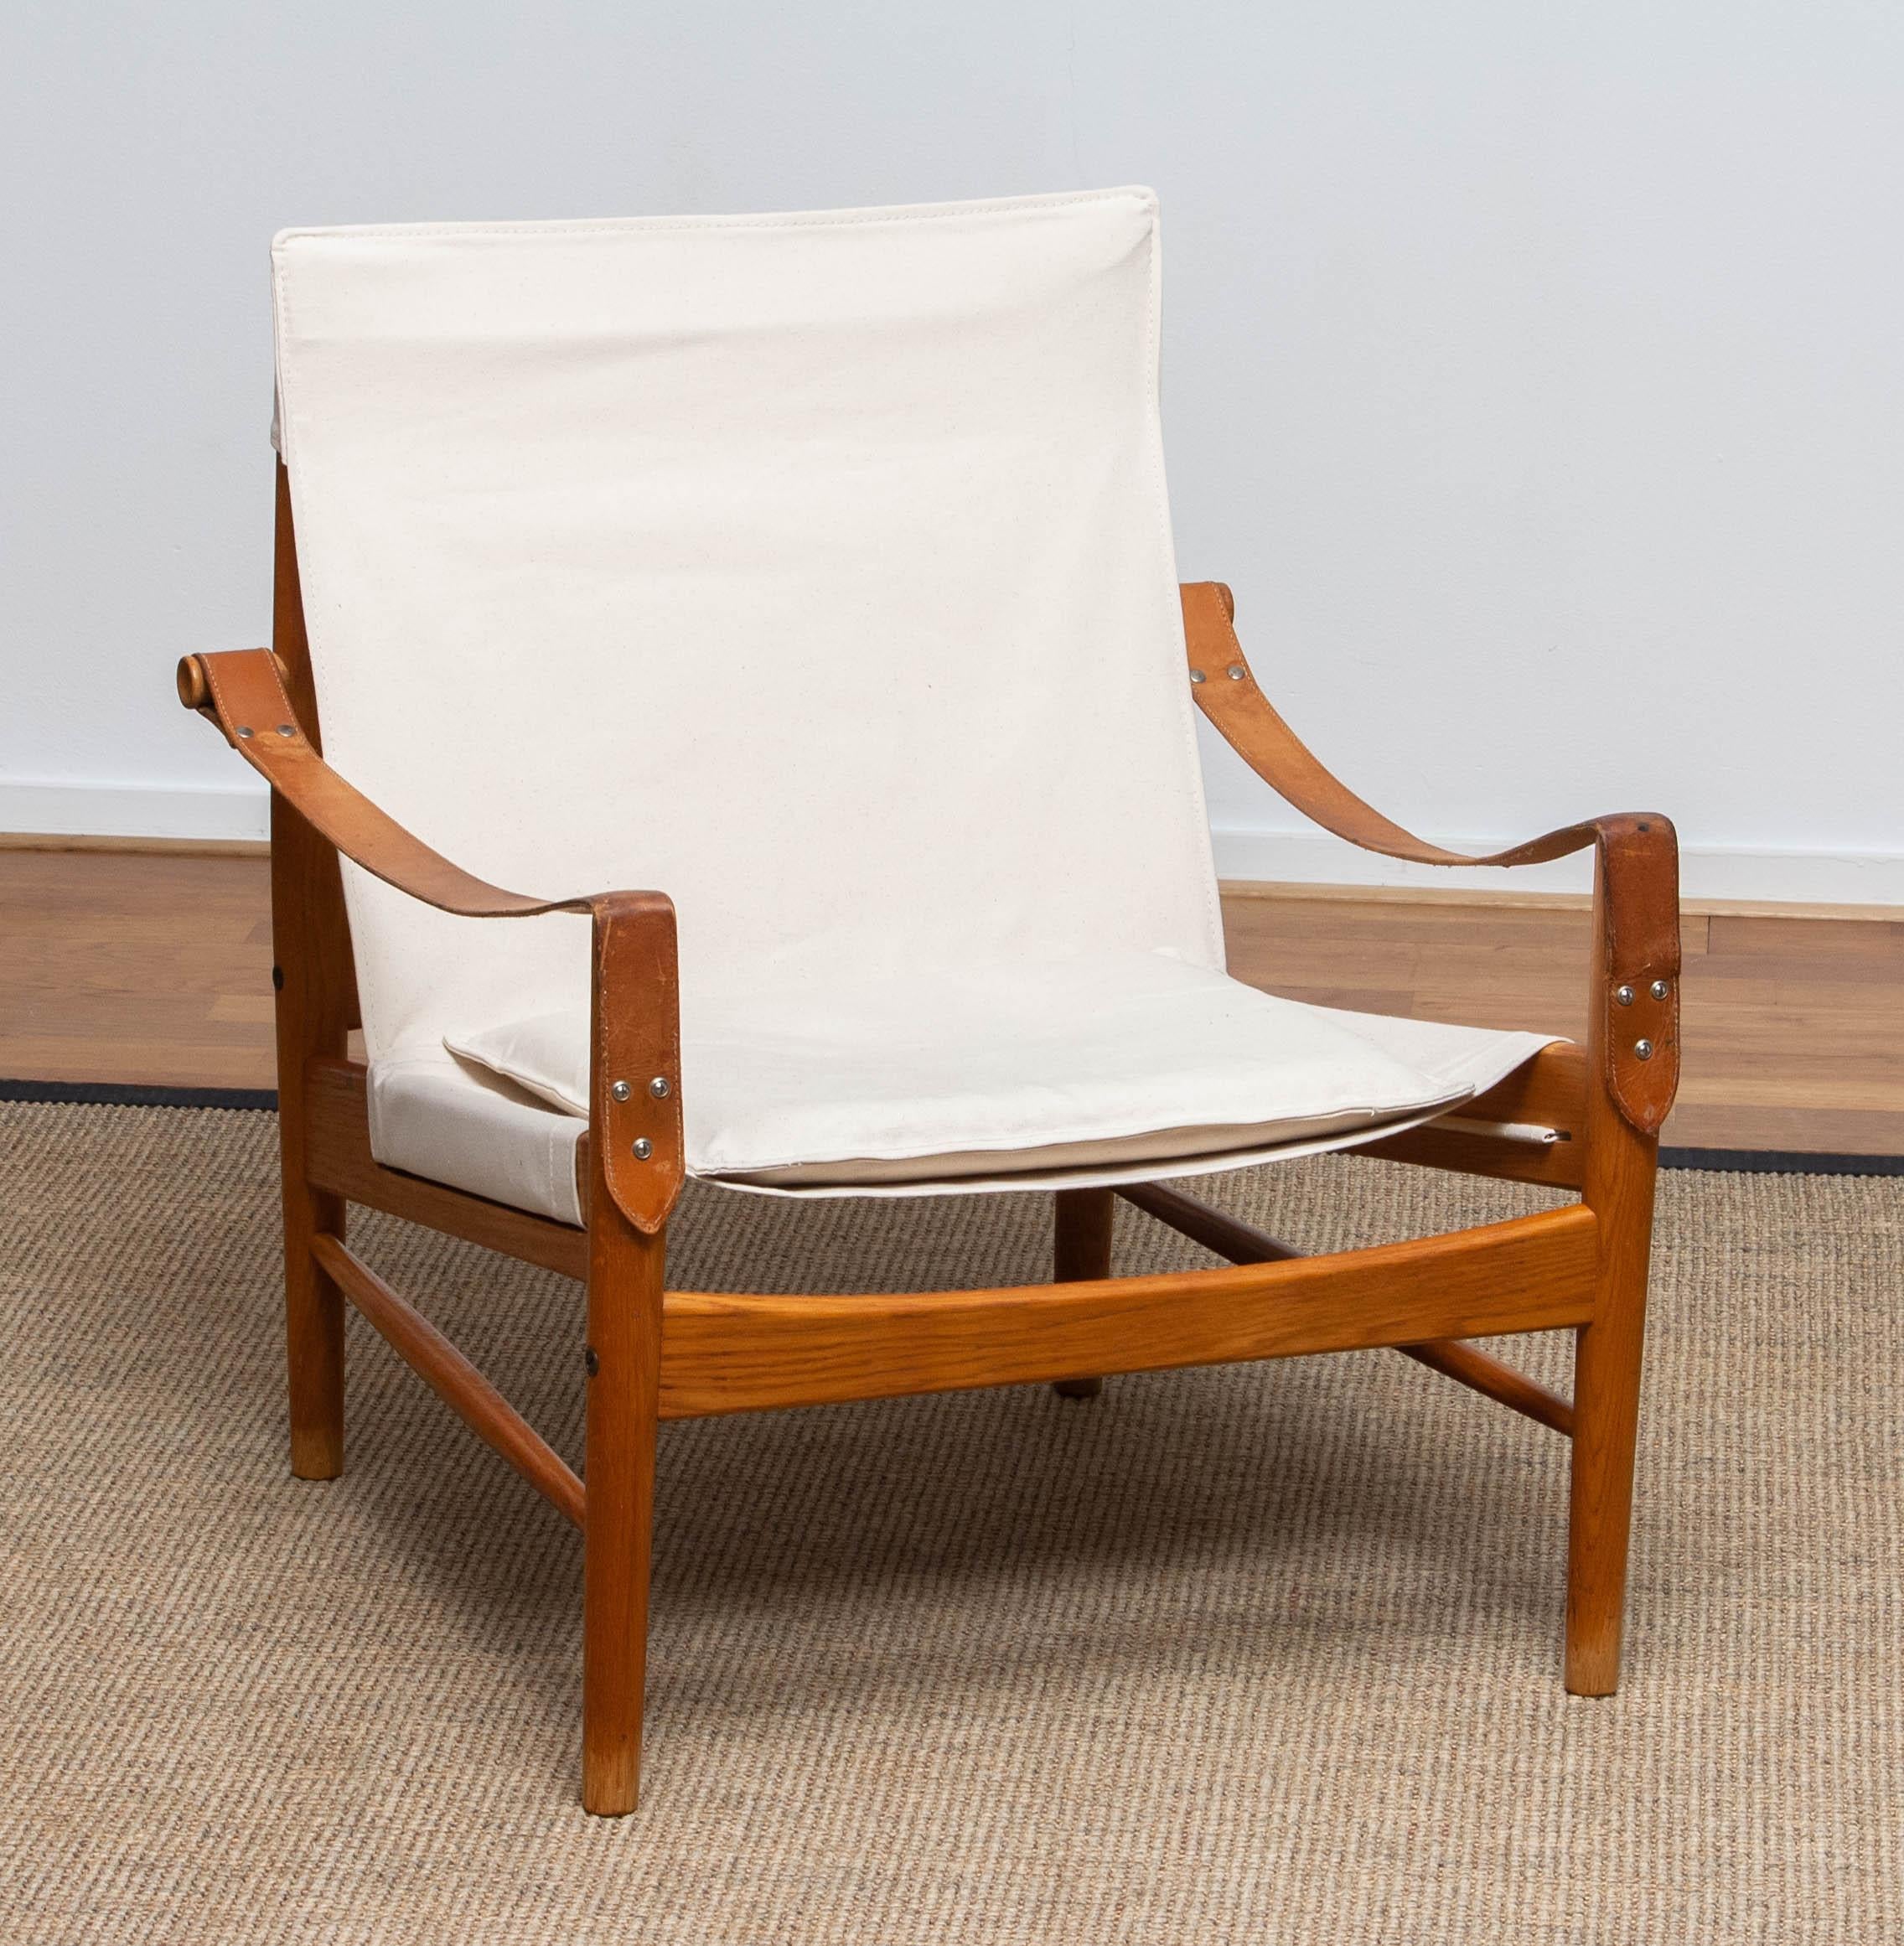 Magnifique chaise safari conçue par Hans Olsen pour Viska Möbler à Kinna, en Suède.
Ces chaises sont fabriquées en chêne et recouvertes d'une nouvelle toile.
Il est en très bon état et marqué.
Période : 1960s.
Dimensions : H 81 cm, L 73 cm, P 70 cm,